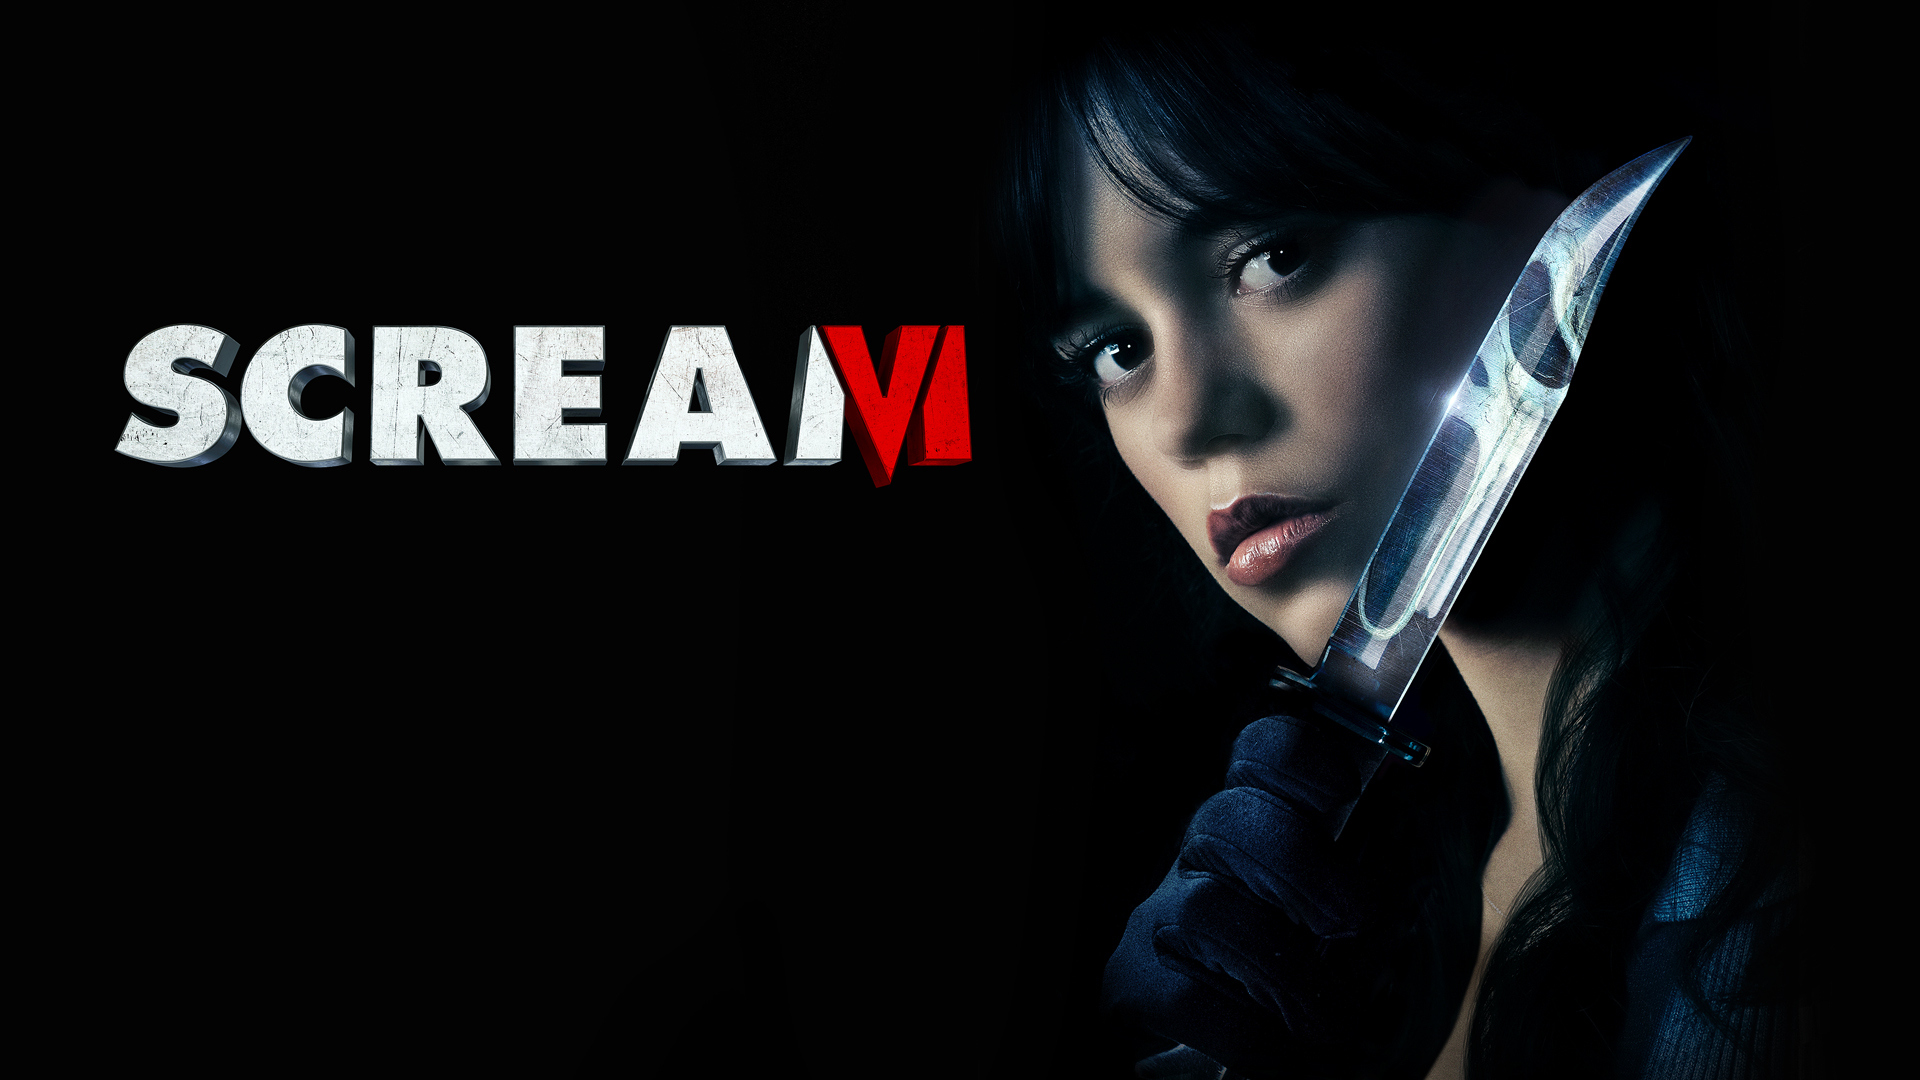 Scream 6 Now On Paramount Plus & Digital #scream #scream6 #screamvi